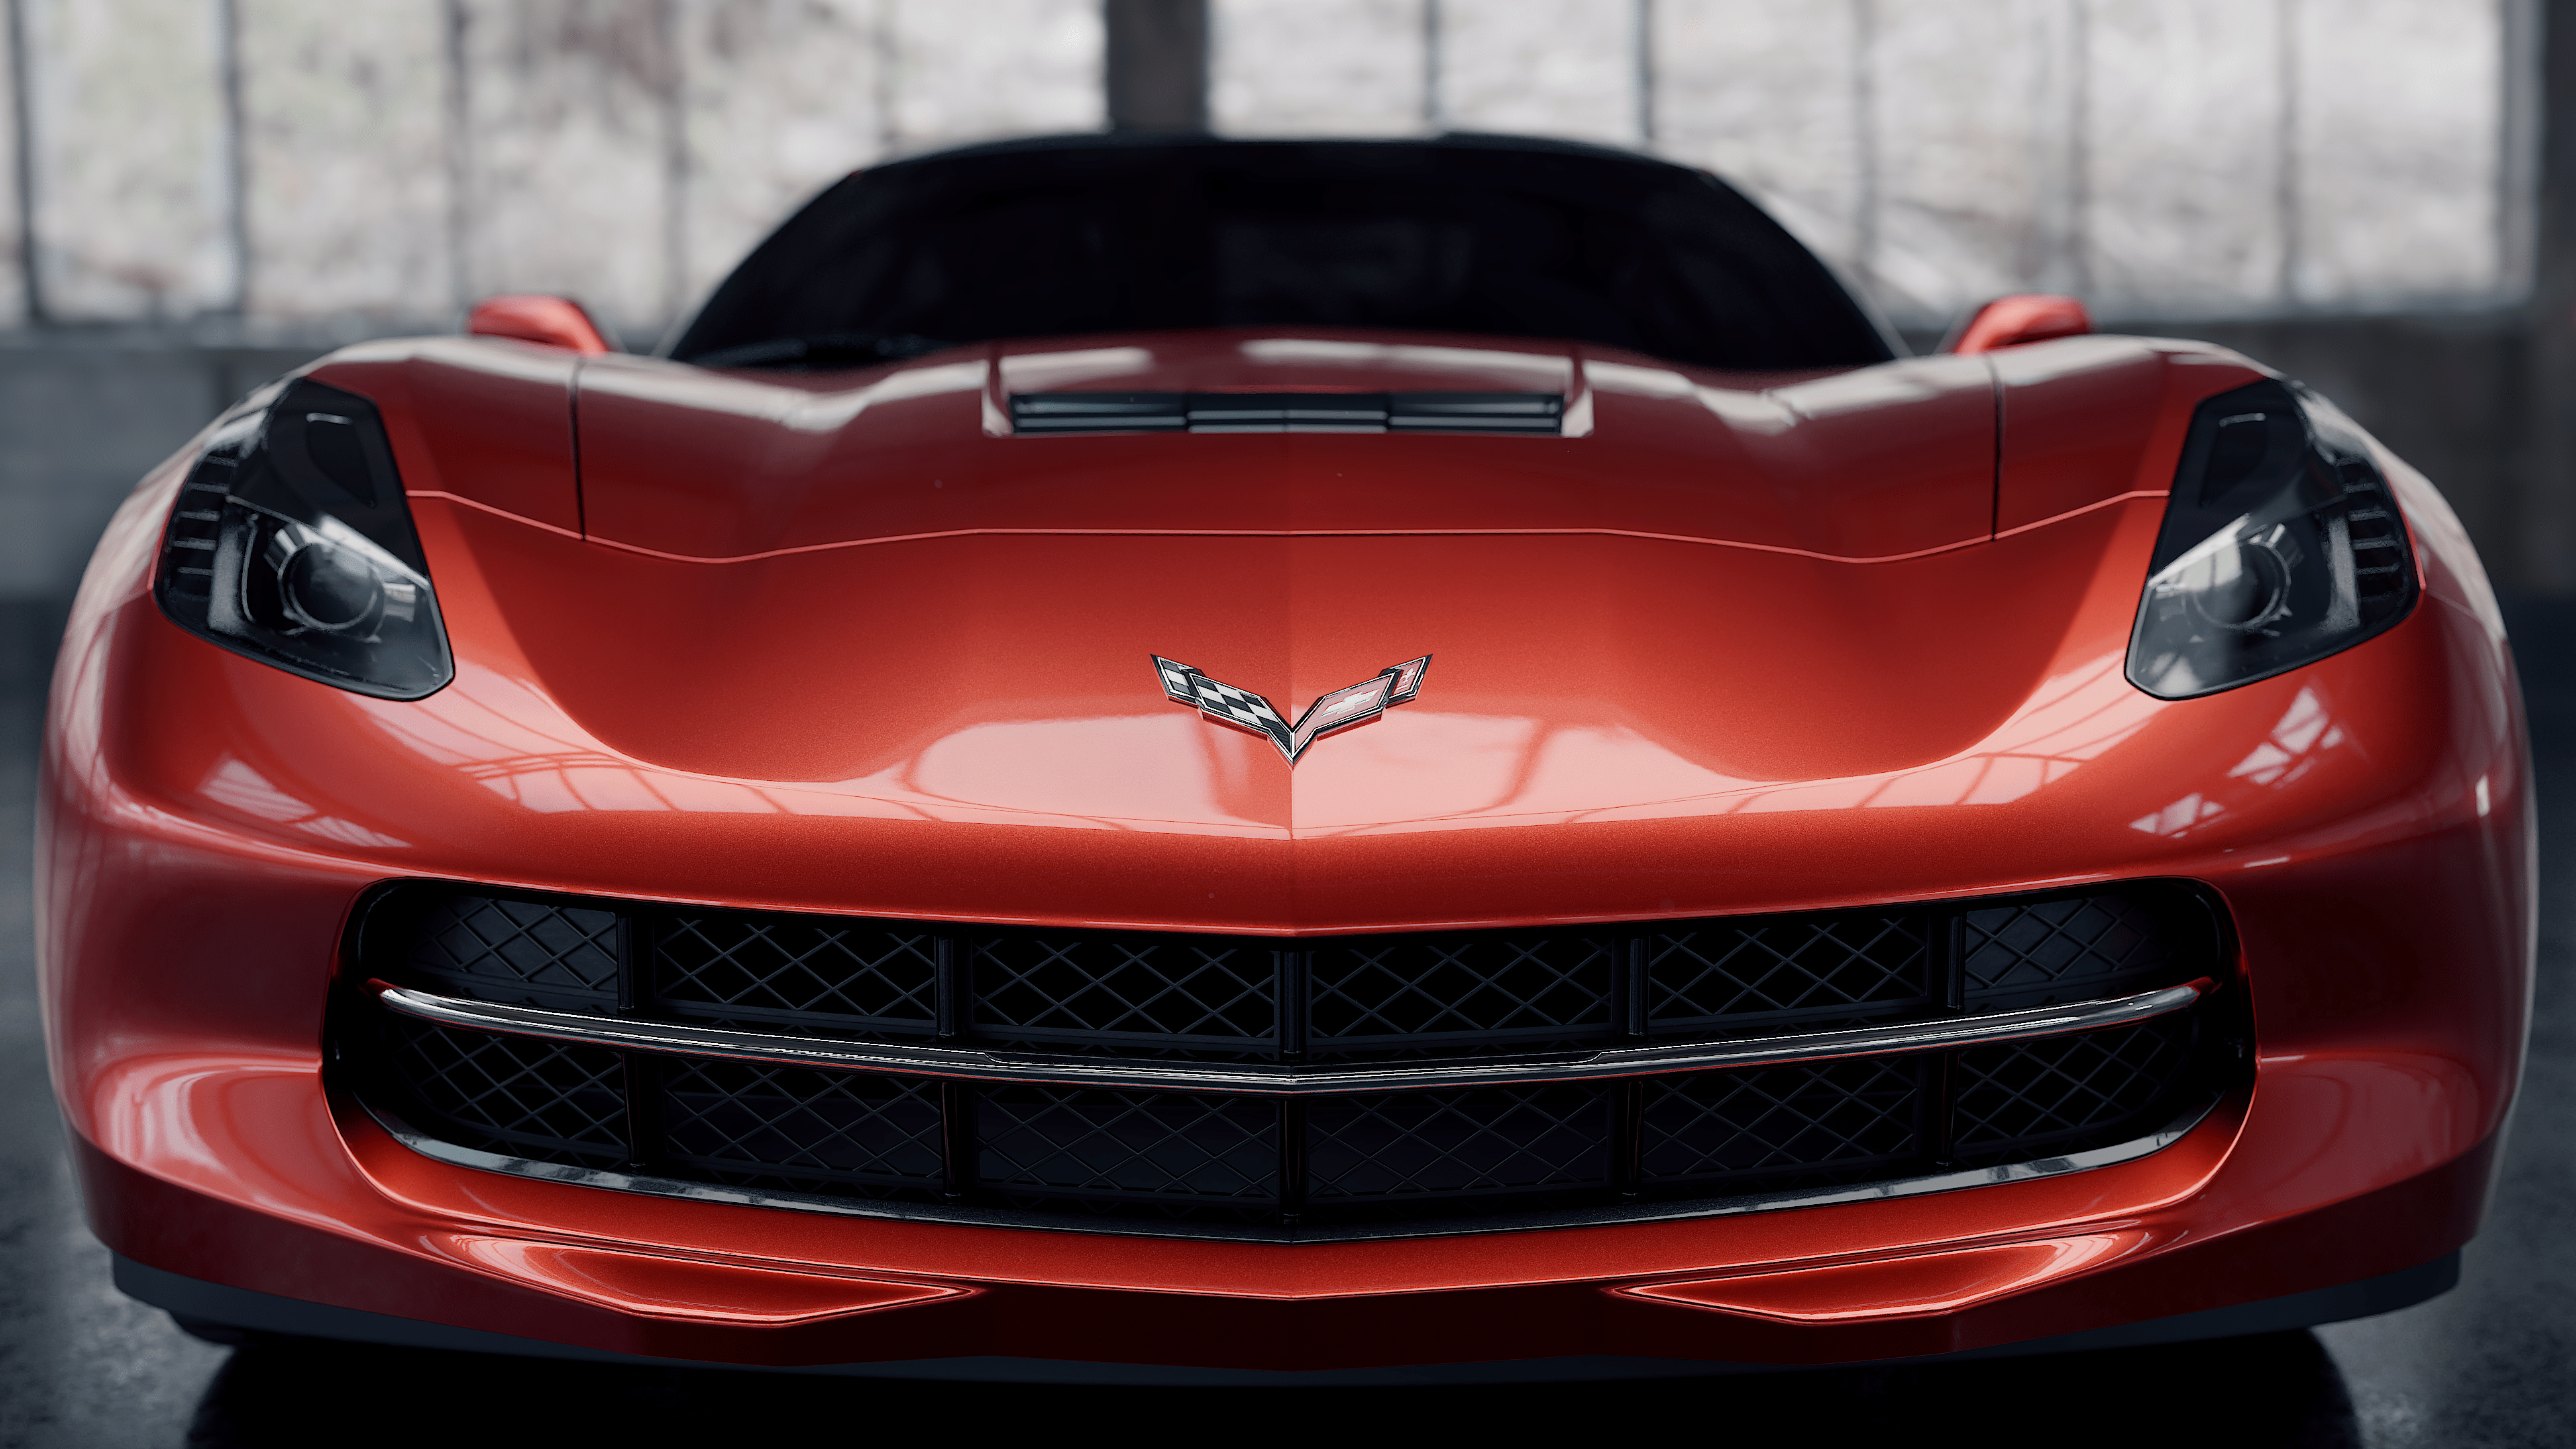 Chevrolet corvette in Blender cycles render image